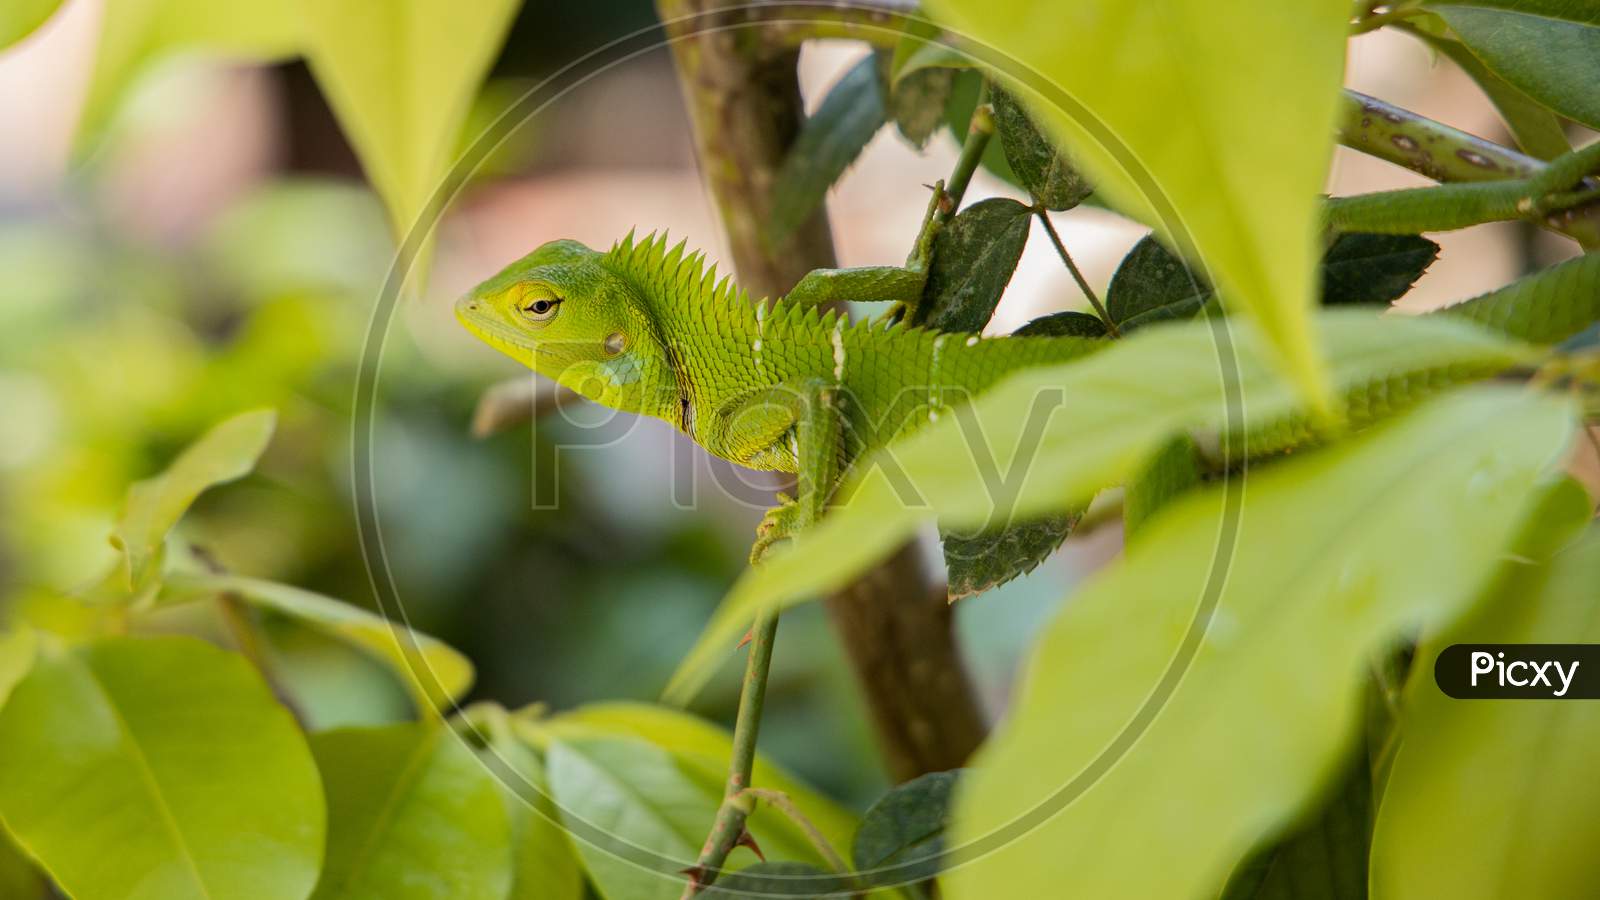 Green garden Lizard